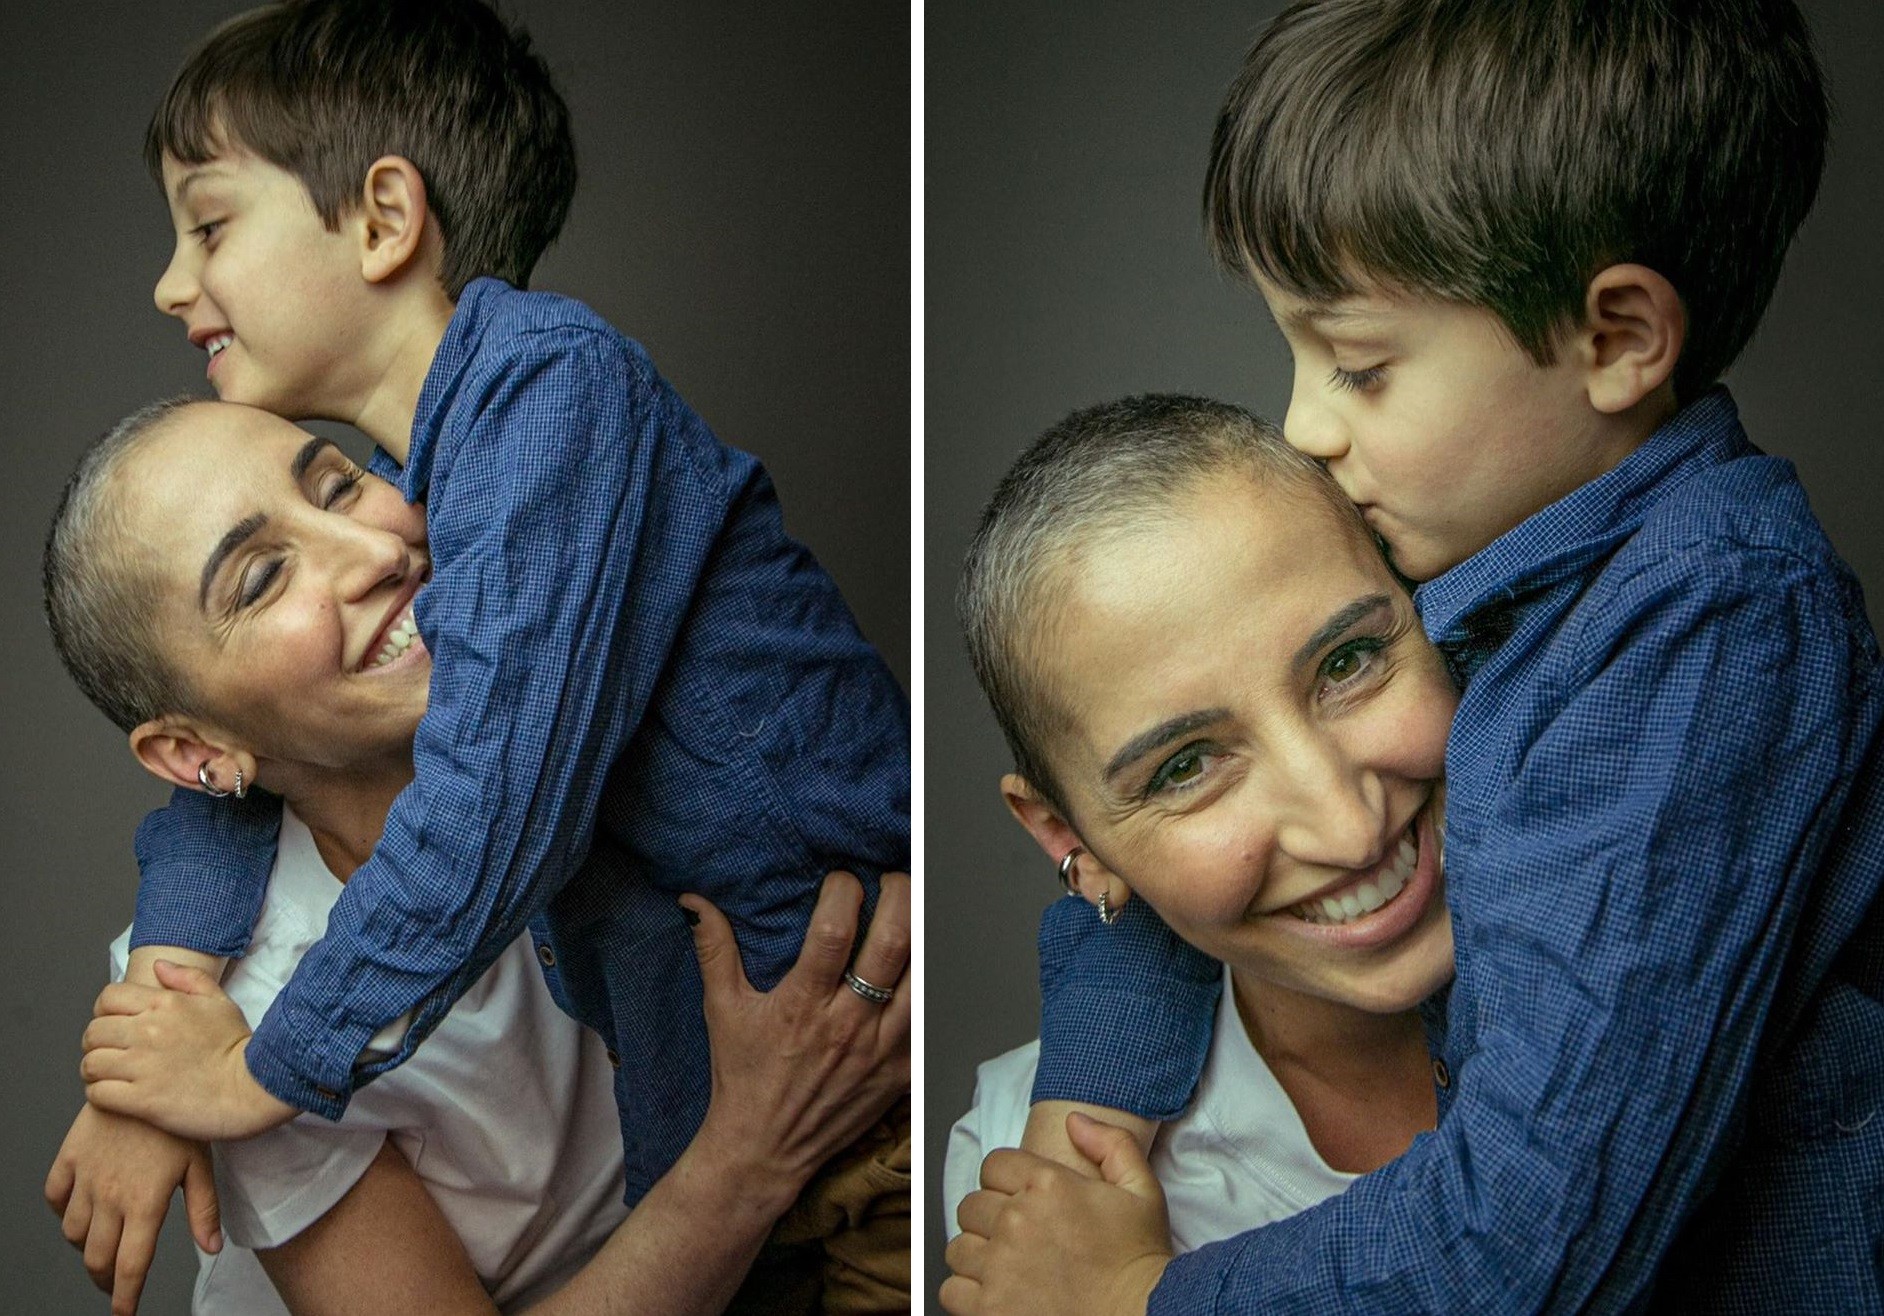 Alice Bastos Neves e o filho, Martin (Foto: Reprodução/Instagram)